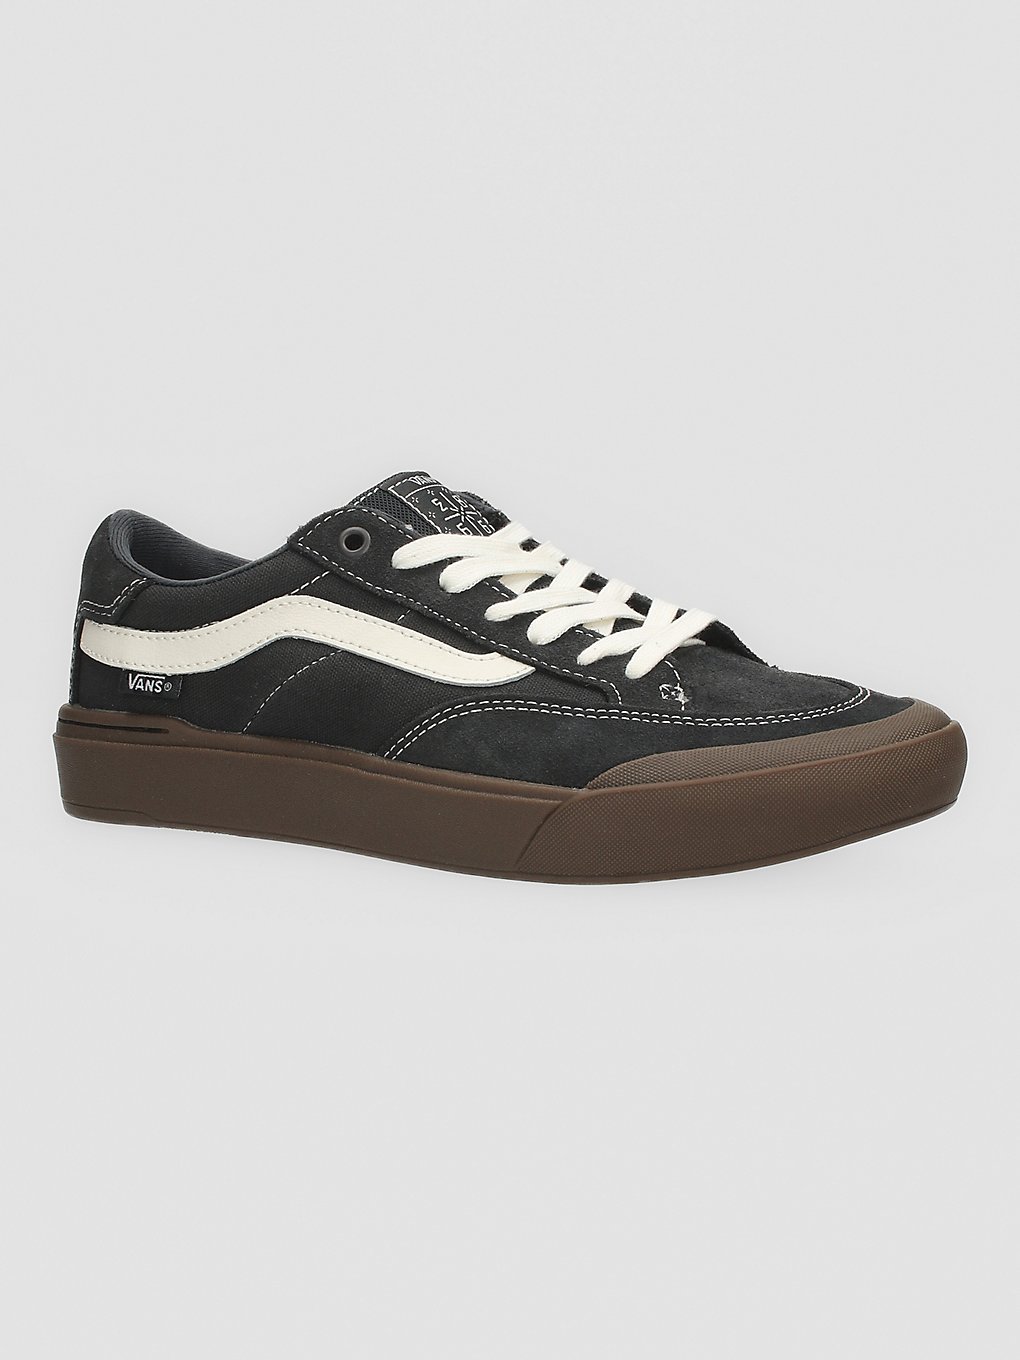 Vans Berle Skate Shoes raven/dark gum